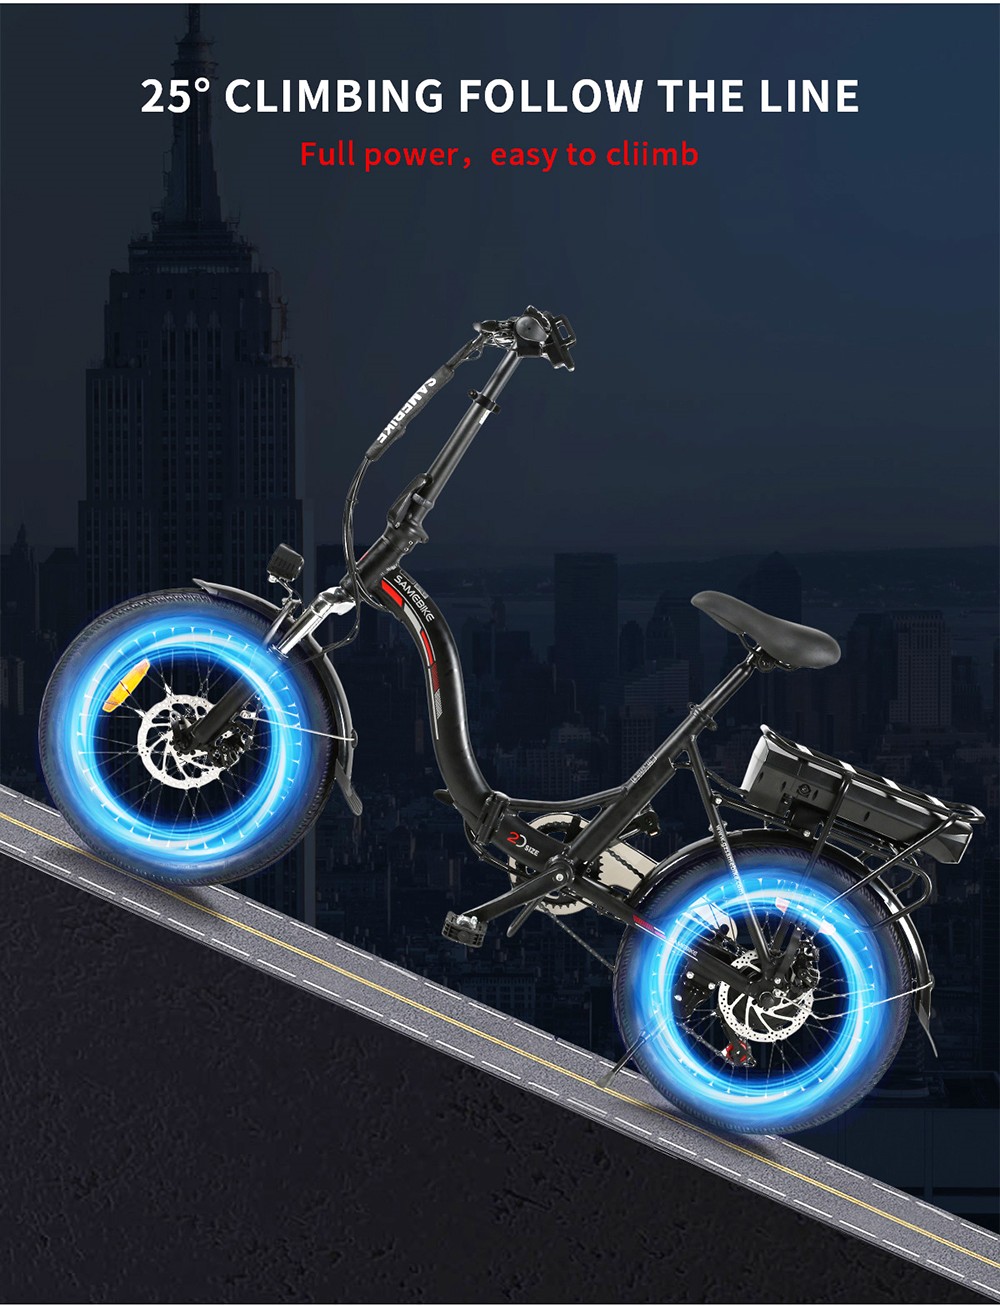 Składany rower elektryczny Samebike JG20 Smart 350W - czarny